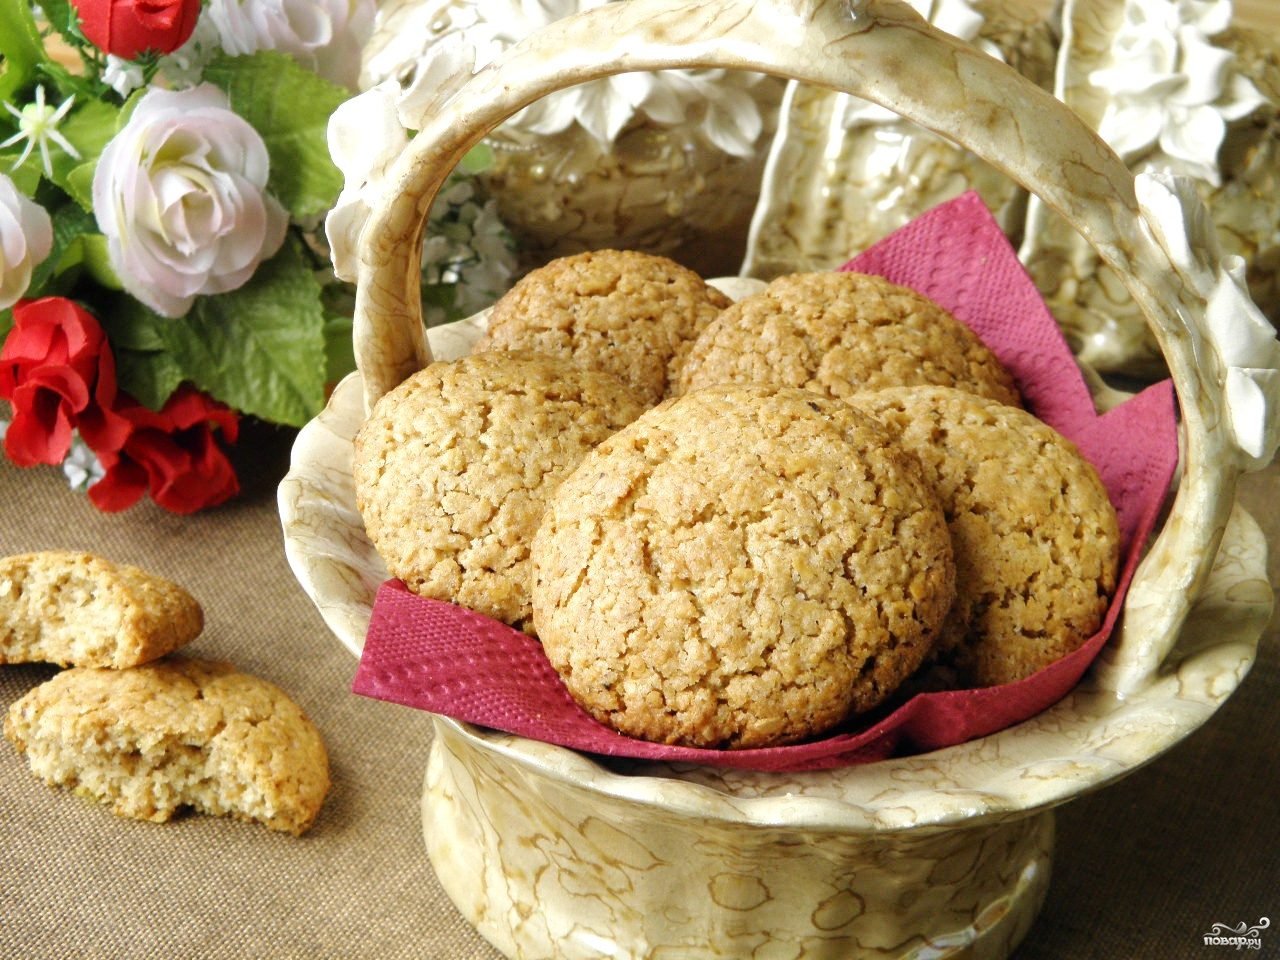 Овсяное печенье рецепт домашний классический